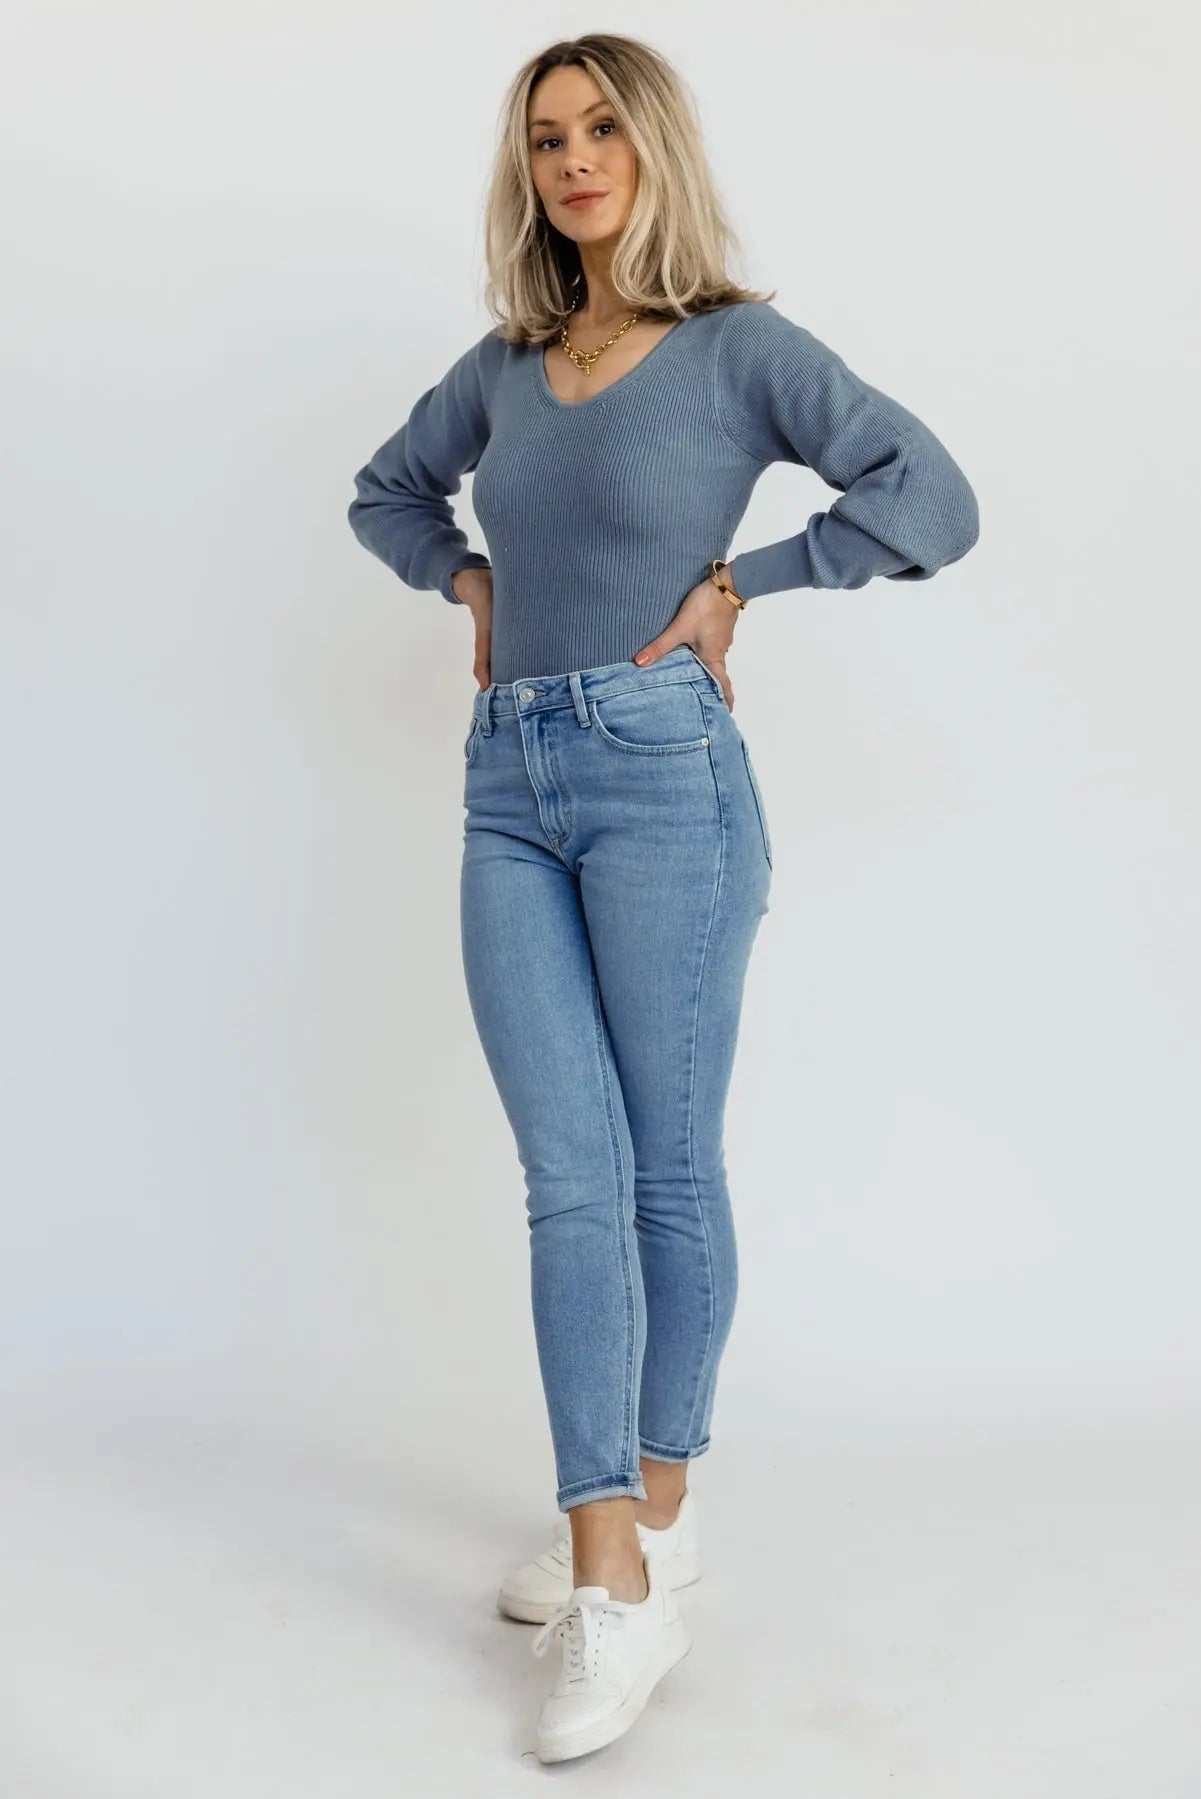 Layne Blue Knit Sweater Bodysuit - FINAL SALE - JO+CO